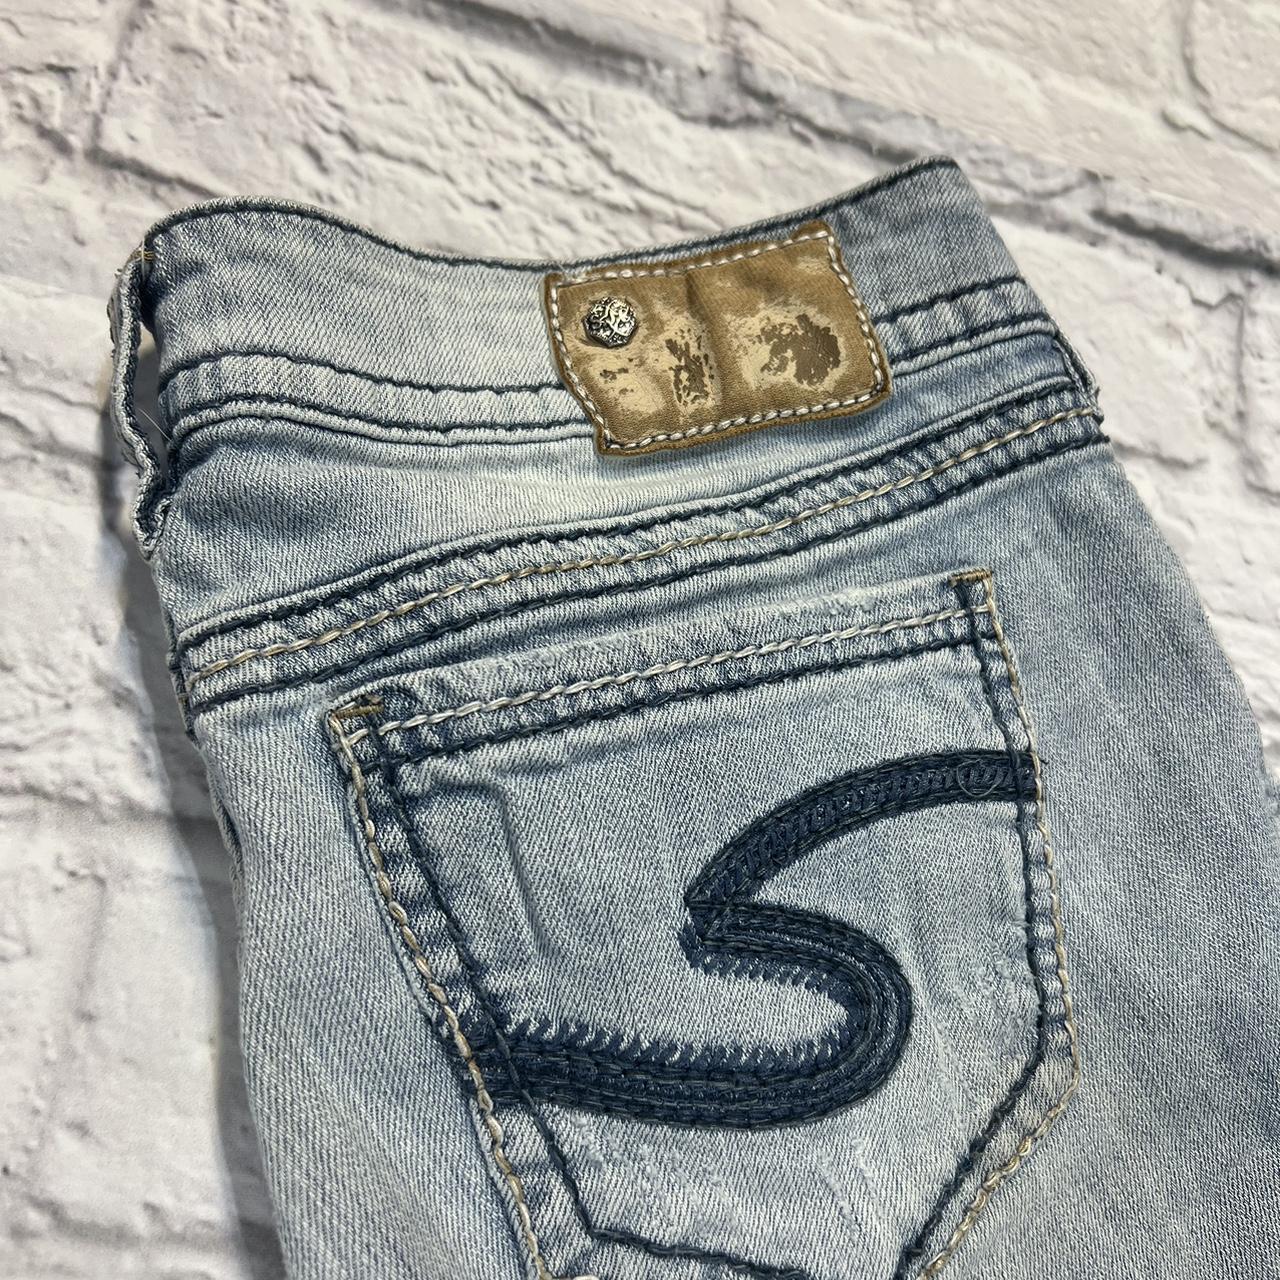 Vintage Women’s Silver Jeans Y2K Denim Size Waist 28... - Depop